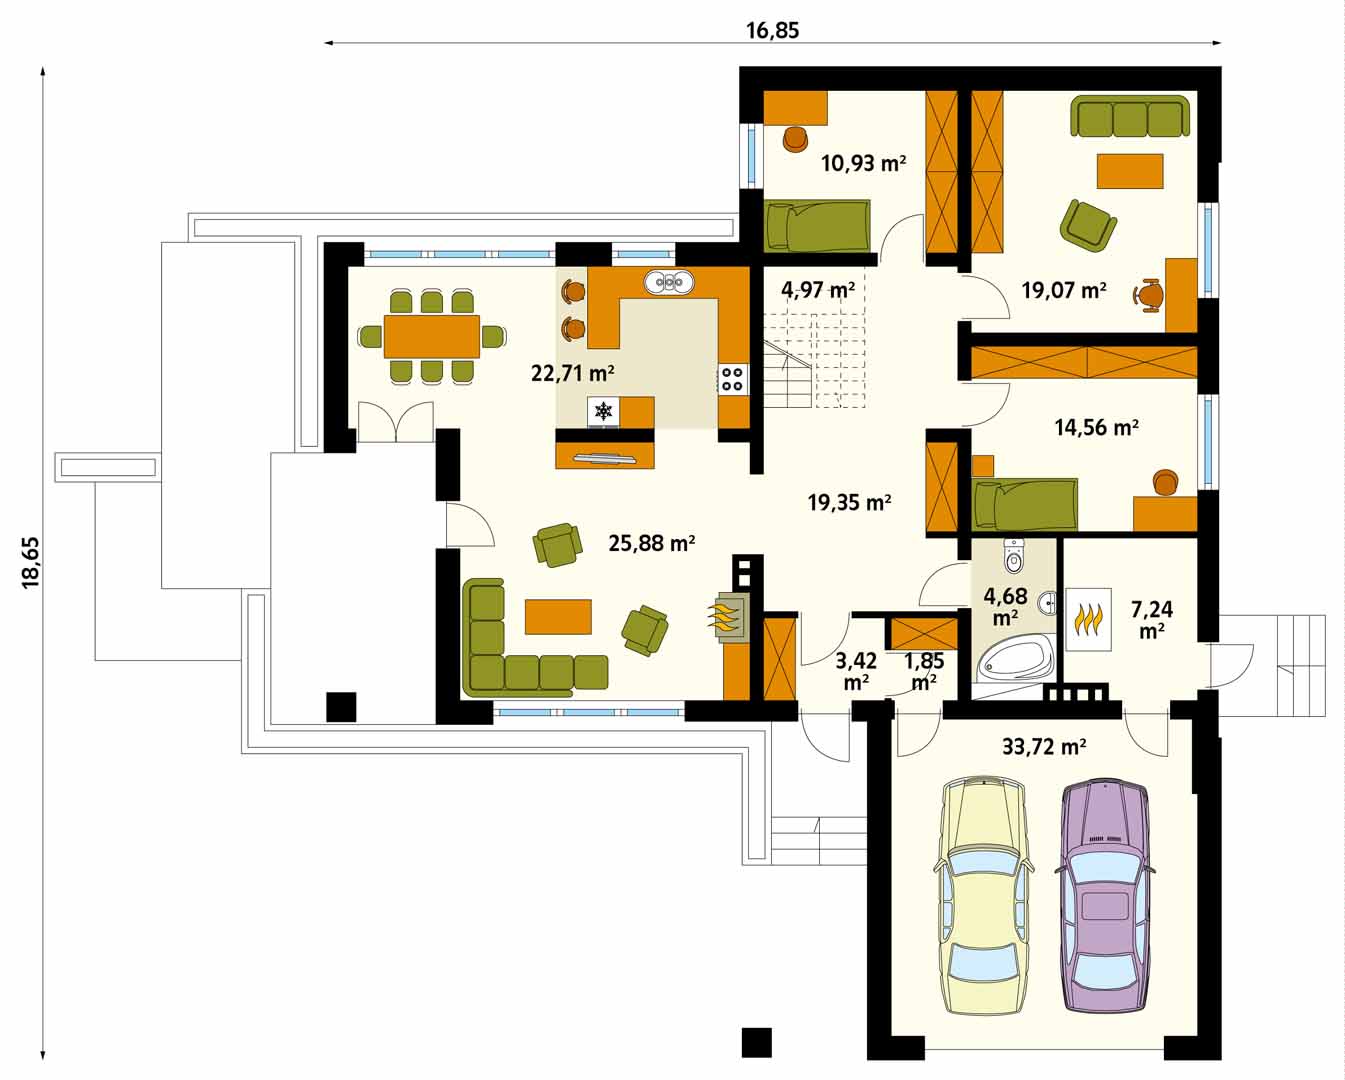 Проекты г образных домов с гаражом: Проекты одноэтажных домов с гаражом, фото, цены, готовые и типовые. Каталог содержит планировки, планы и чертежи